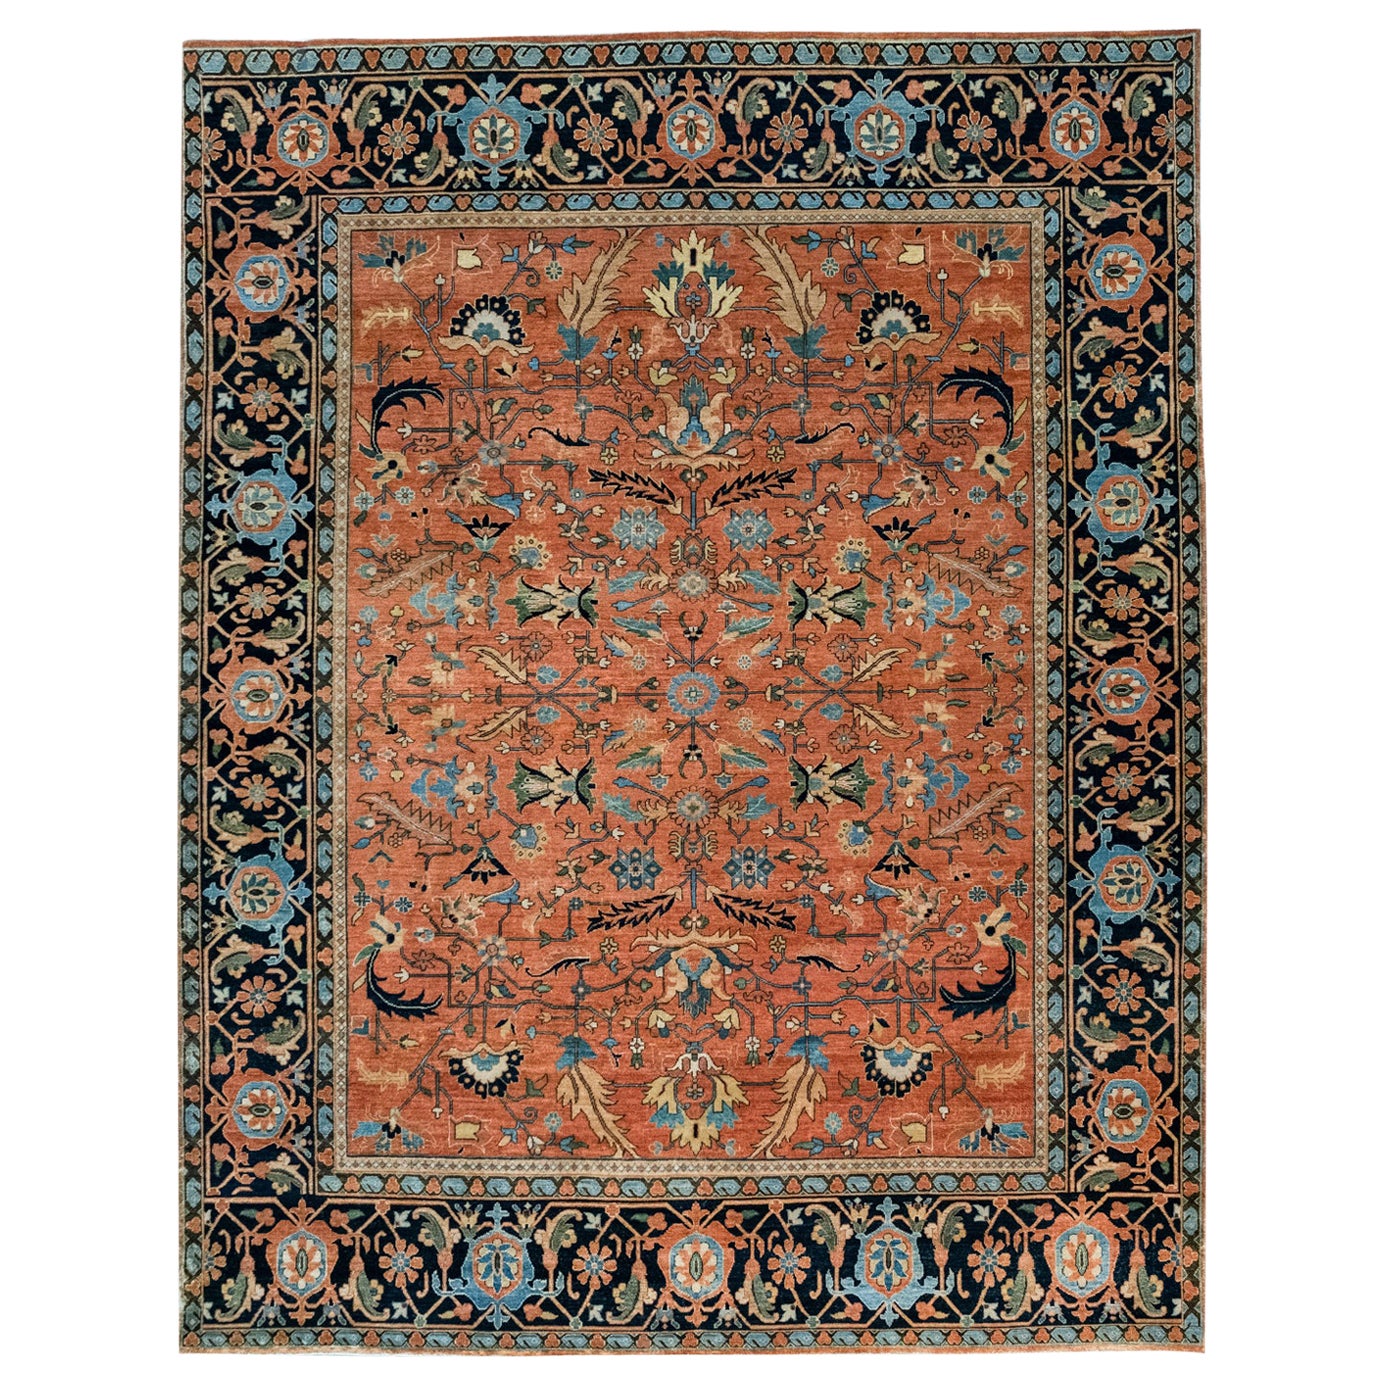 Classic Persian Serapi Carpet in Orange, Indigo, and Blue